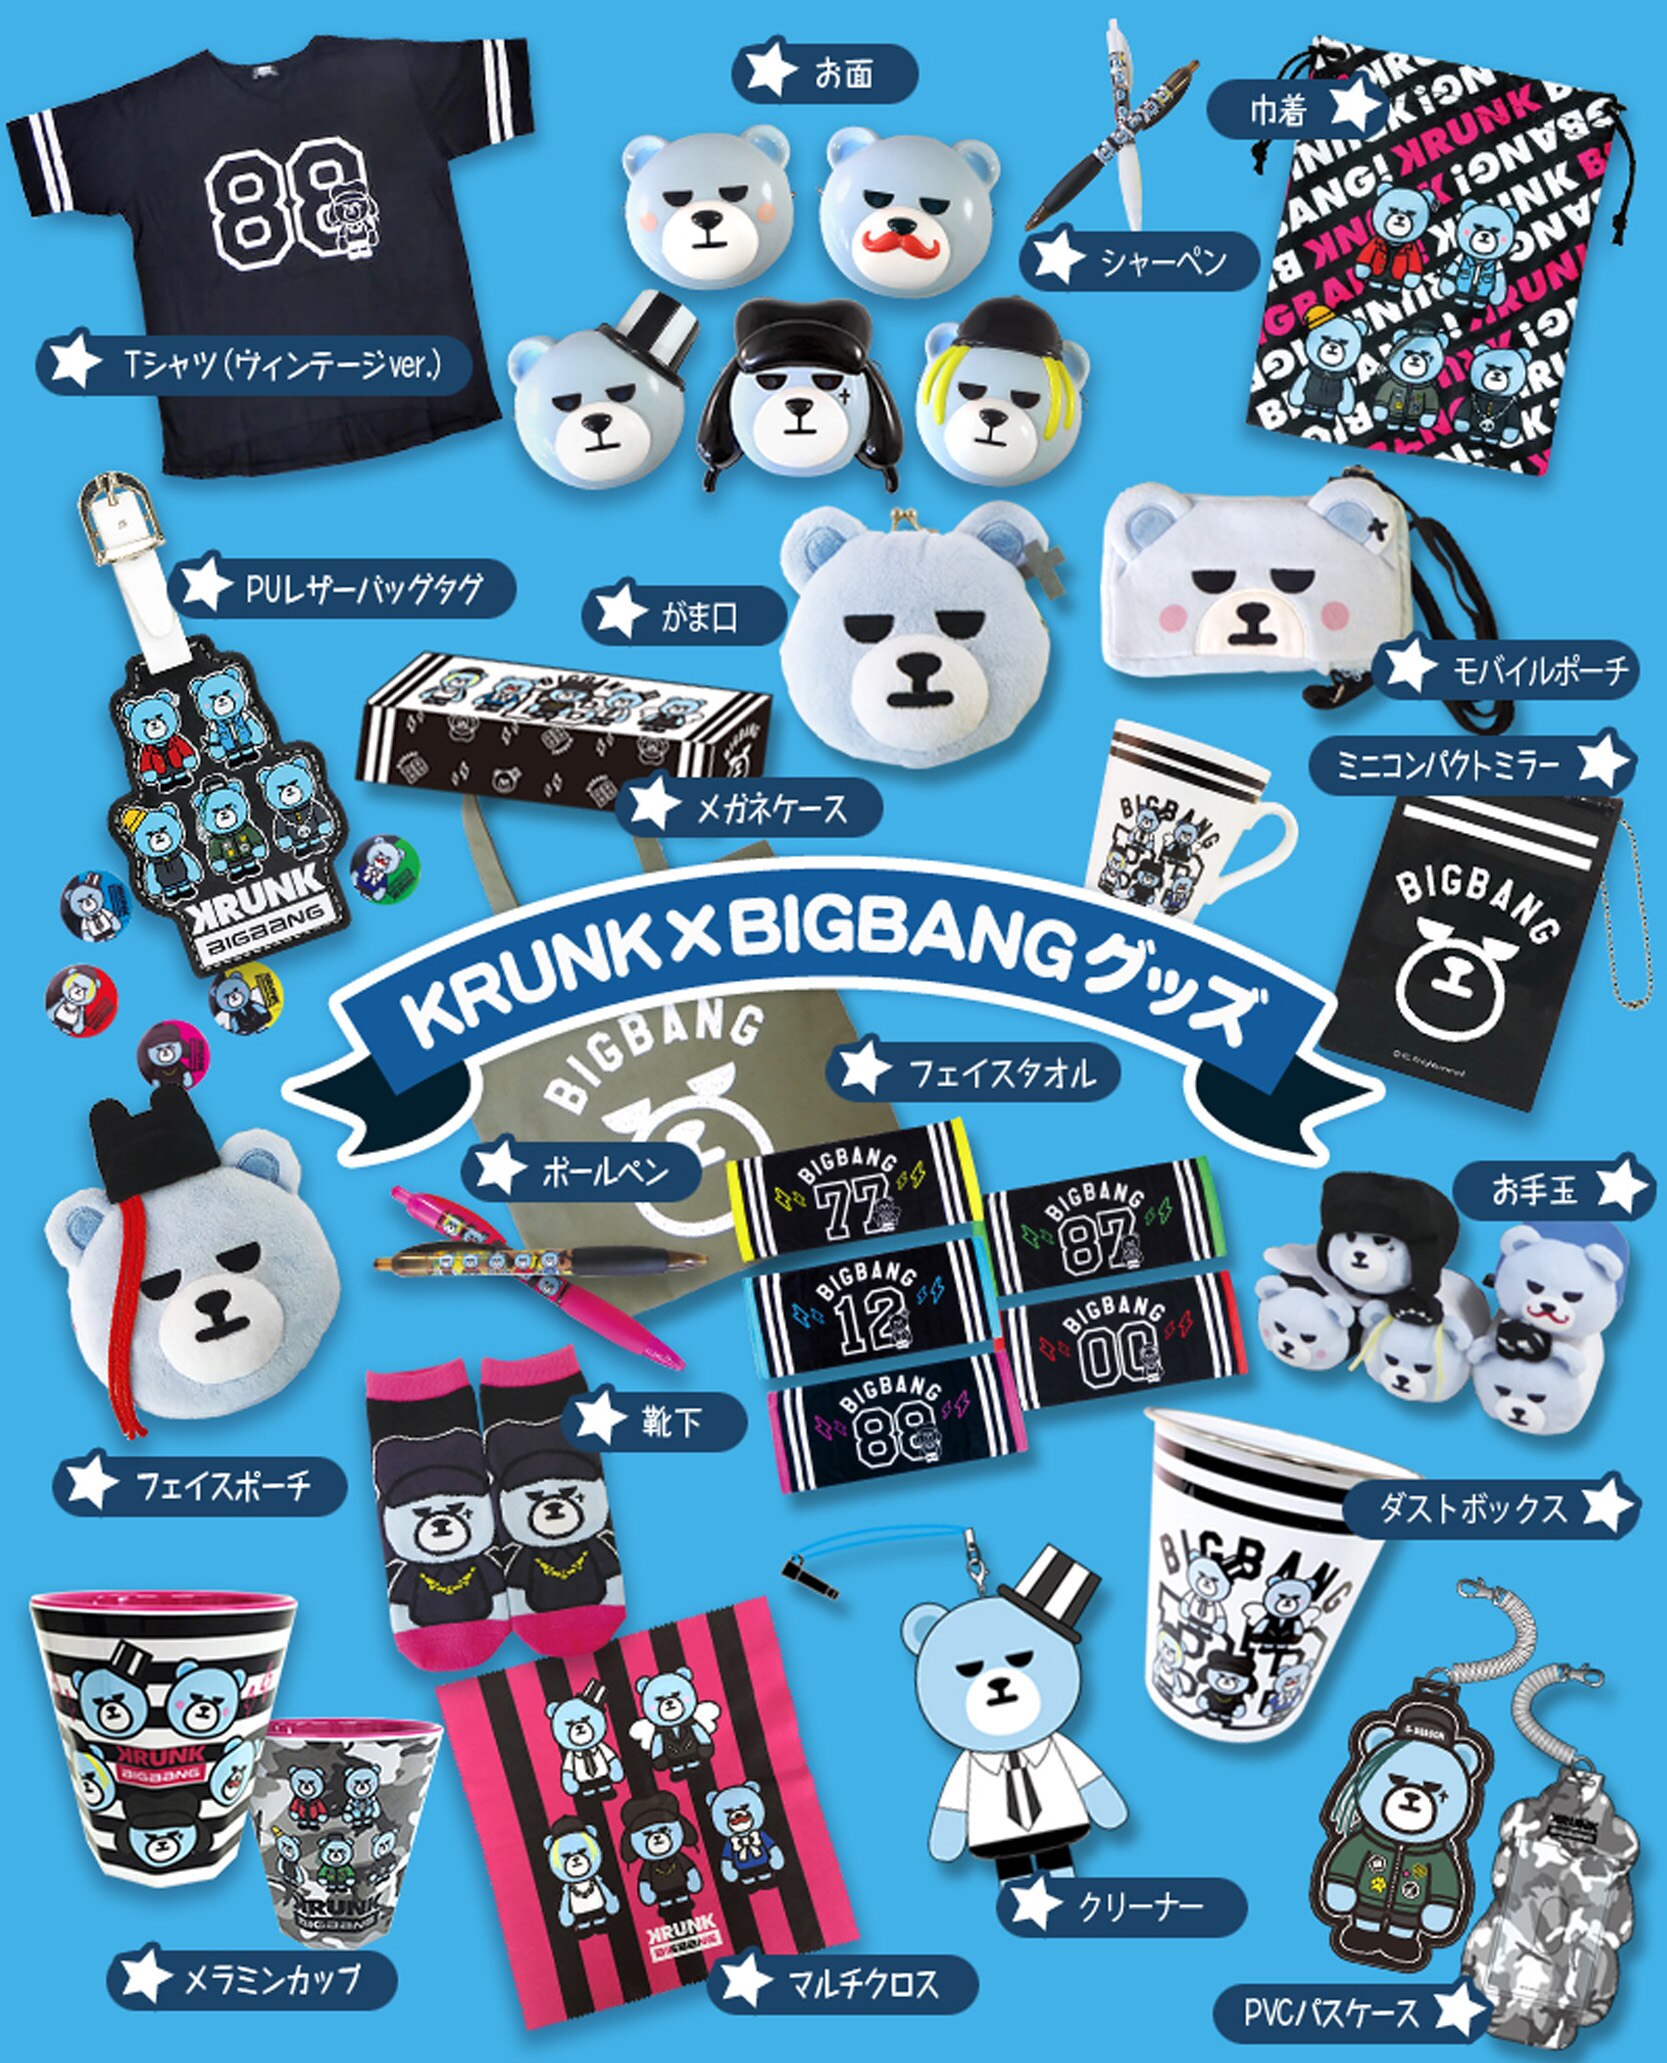 この夏大好評だった Krunk Bigbang Cafe が福岡にオープン ビッグバン Bigbang オフィシャルサイト